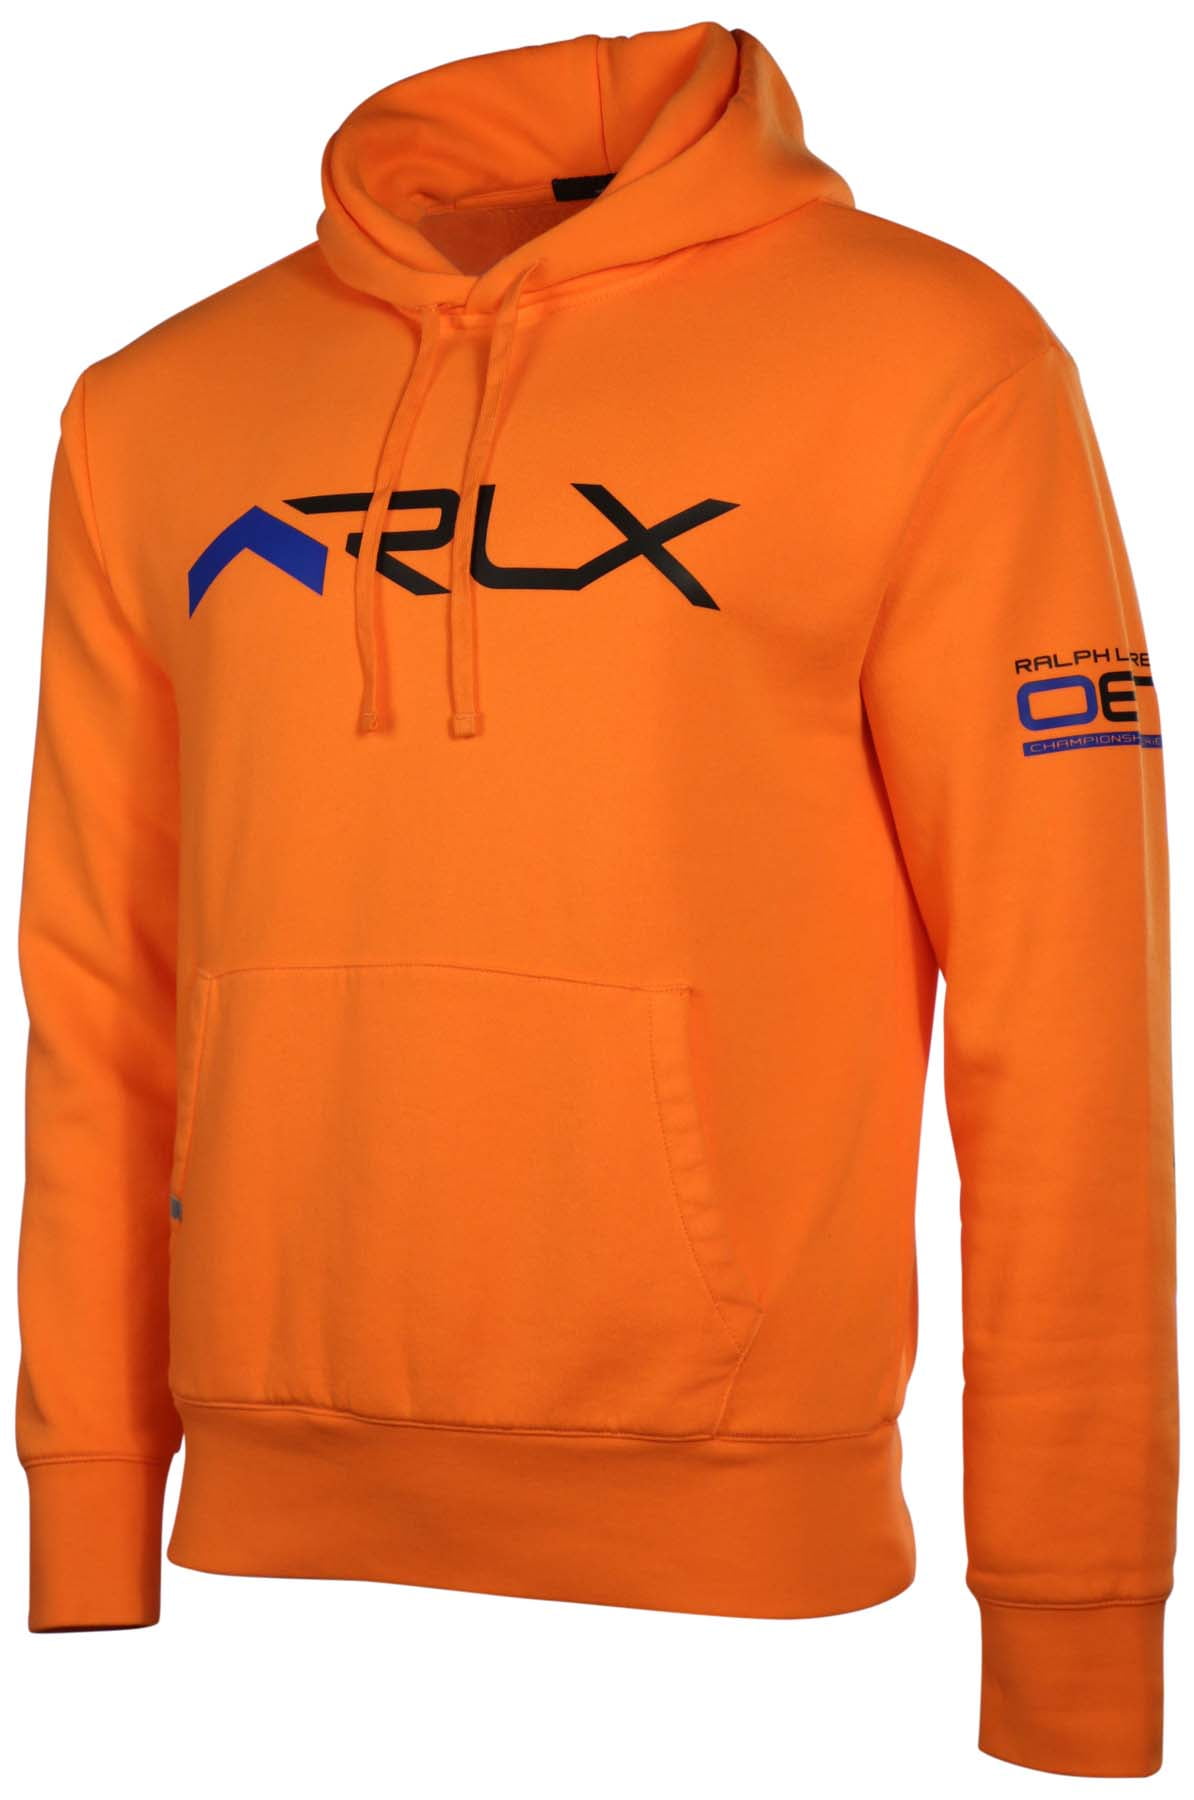 rlx hoodie